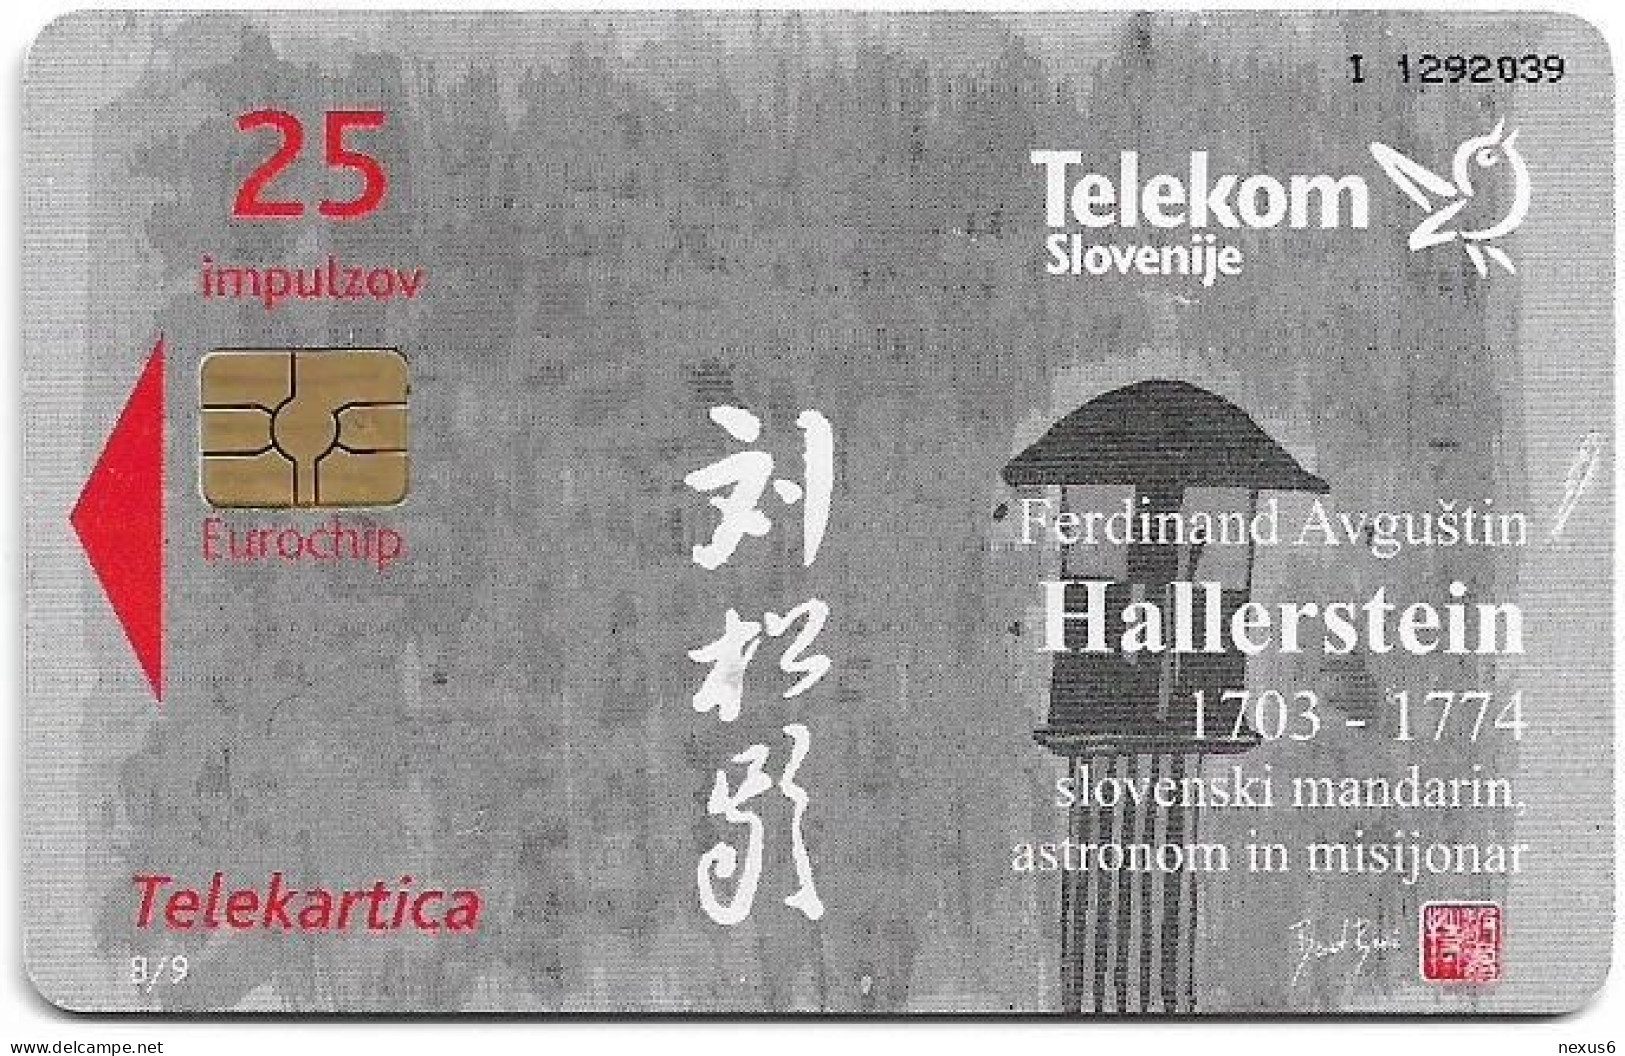 Slovenia - Telekom Slovenije - Mandarin F. A. Hallerstein - 8/9, Gem5 Red, Short Cn., 10.2007, 25Units, 5.000ex, Used - Eslovenia